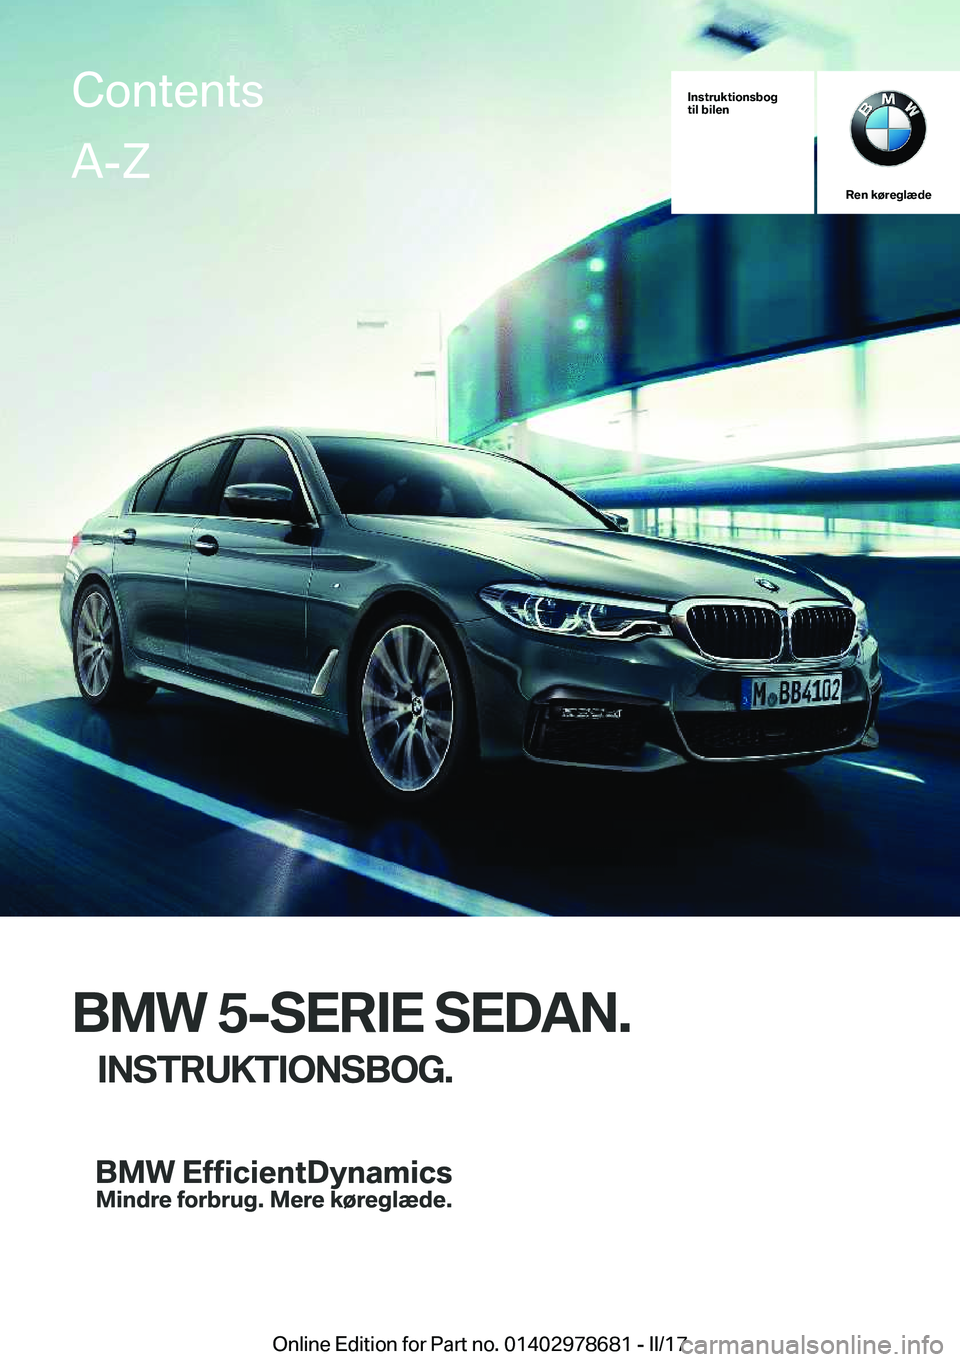 BMW 5 SERIES 2017  InstruktionsbØger (in Danish) �I�n�s�t�r�u�k�t�i�o�n�s�b�o�g
�t�i�l��b�i�l�e�n
�R�e�n��k�